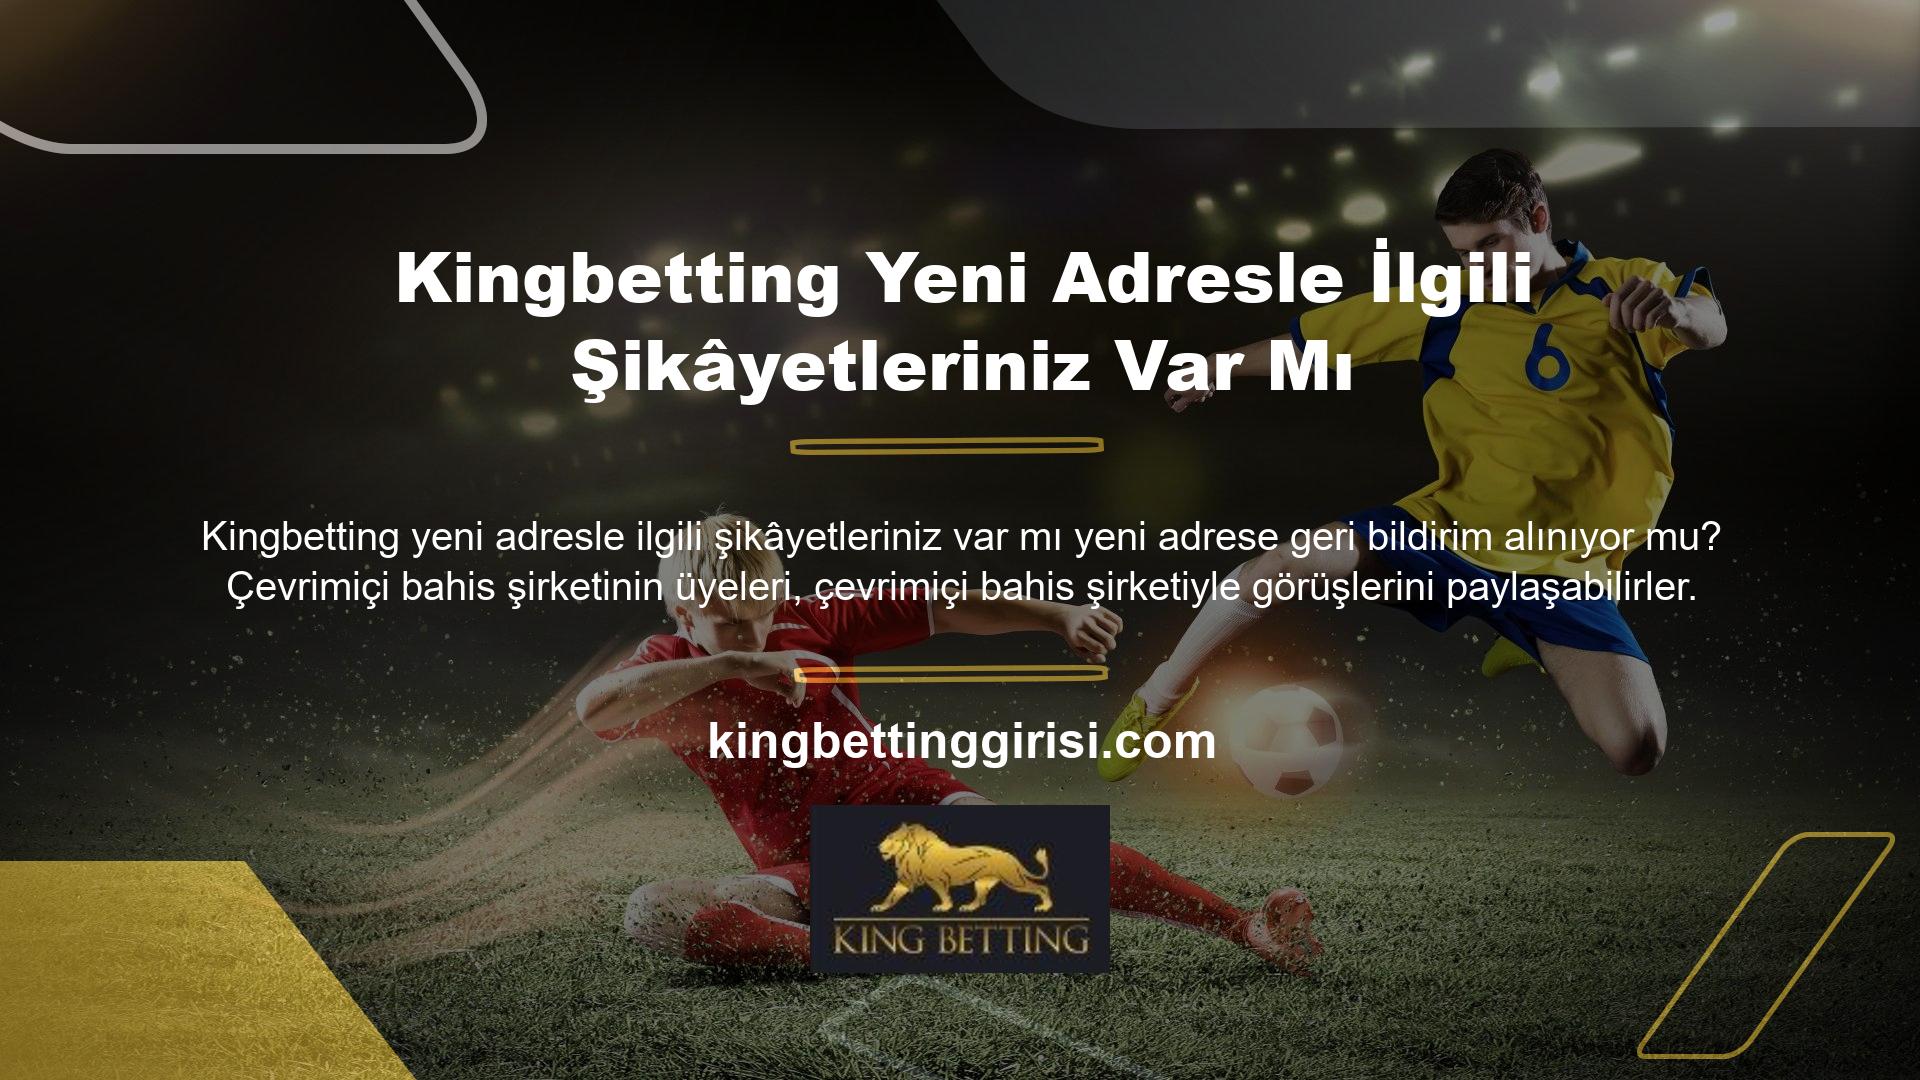 Yasadışı bir Kingbetting şirketine üye iseniz soru ve görüşlerinizi site yöneticisine iletebilirsiniz